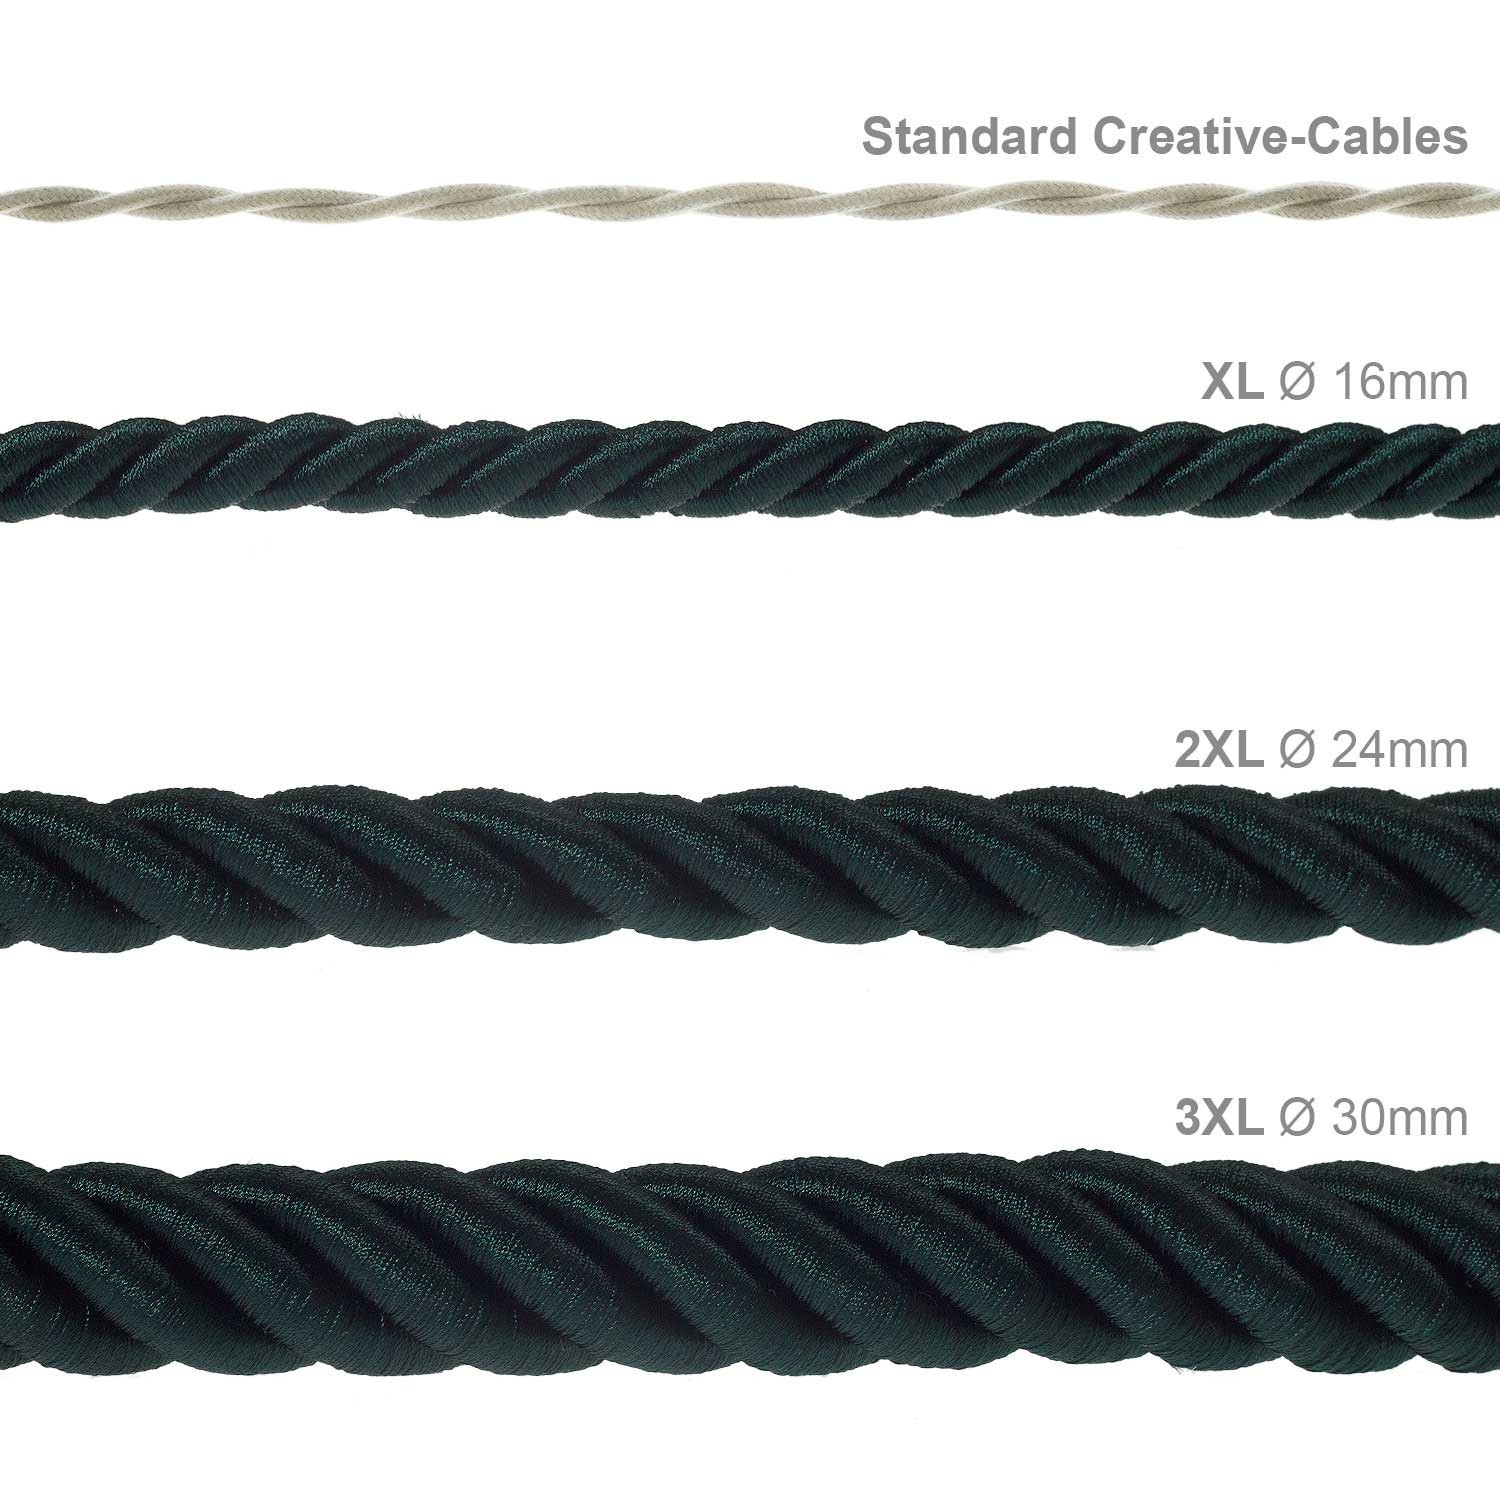 Electrische 3XL touwkabel, 3 x 0,75 mm. Binnenkabels bedekt met donkergroen textiel. Diameter 30 mm.